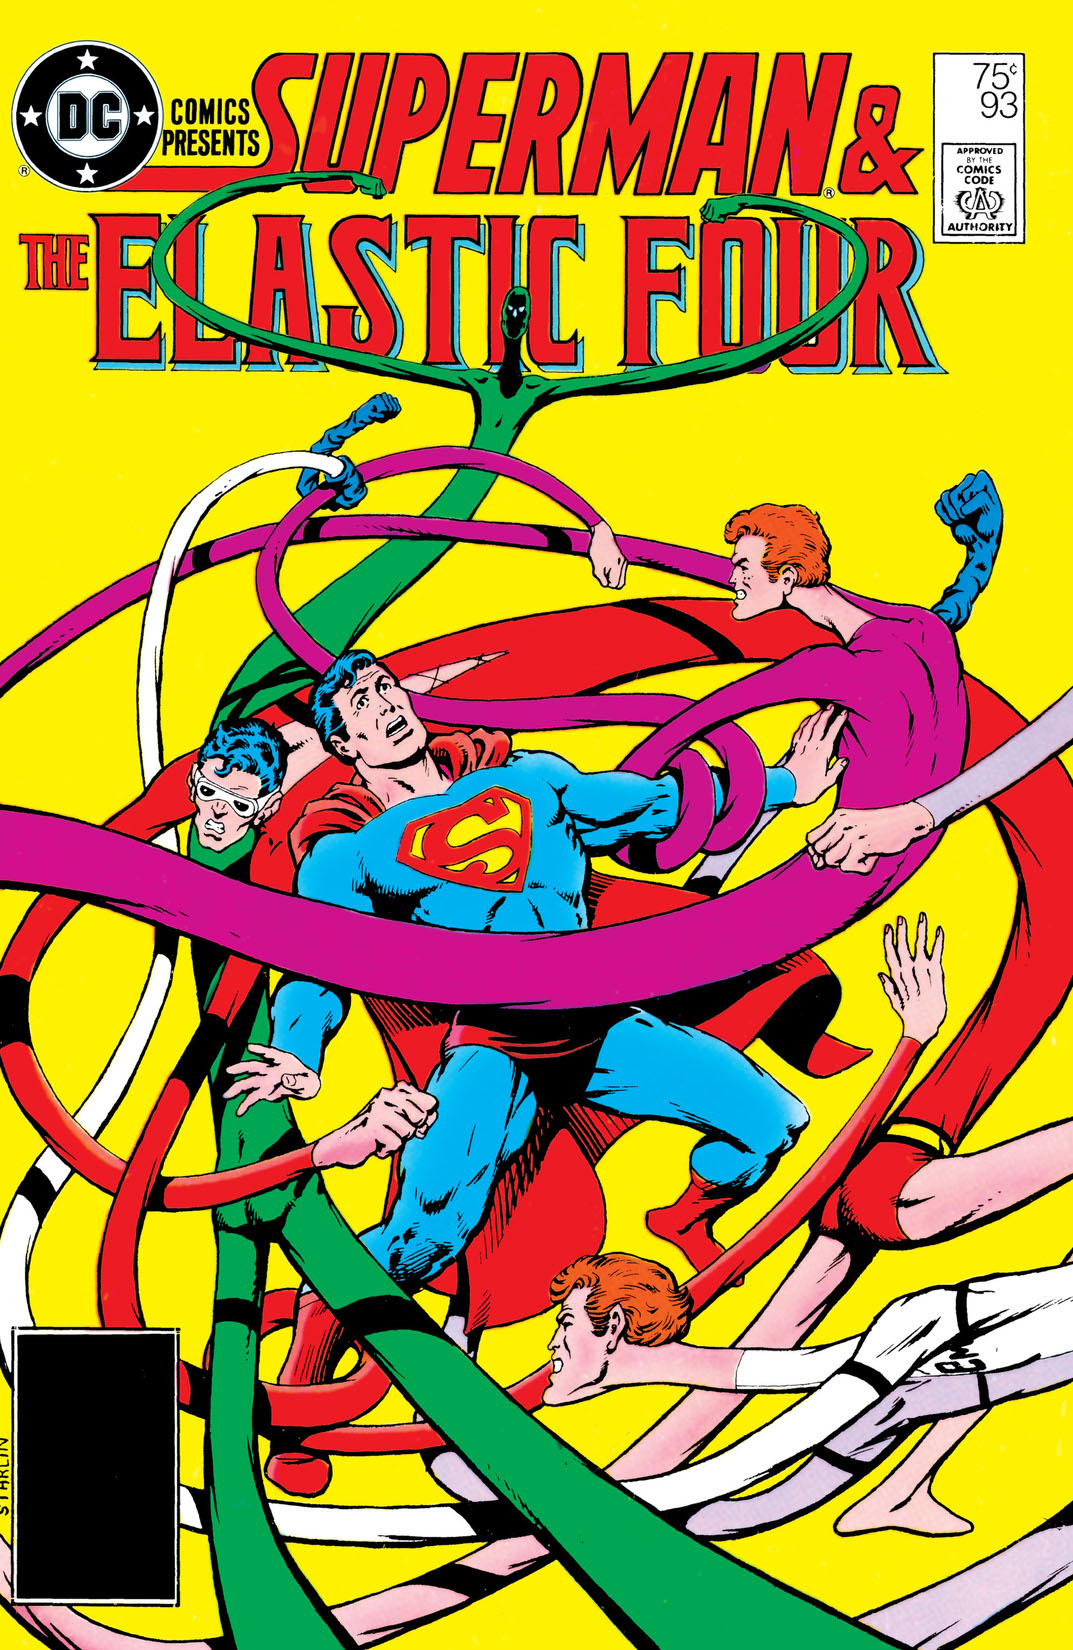 DC Comics Presents (1978-) #93 preview images